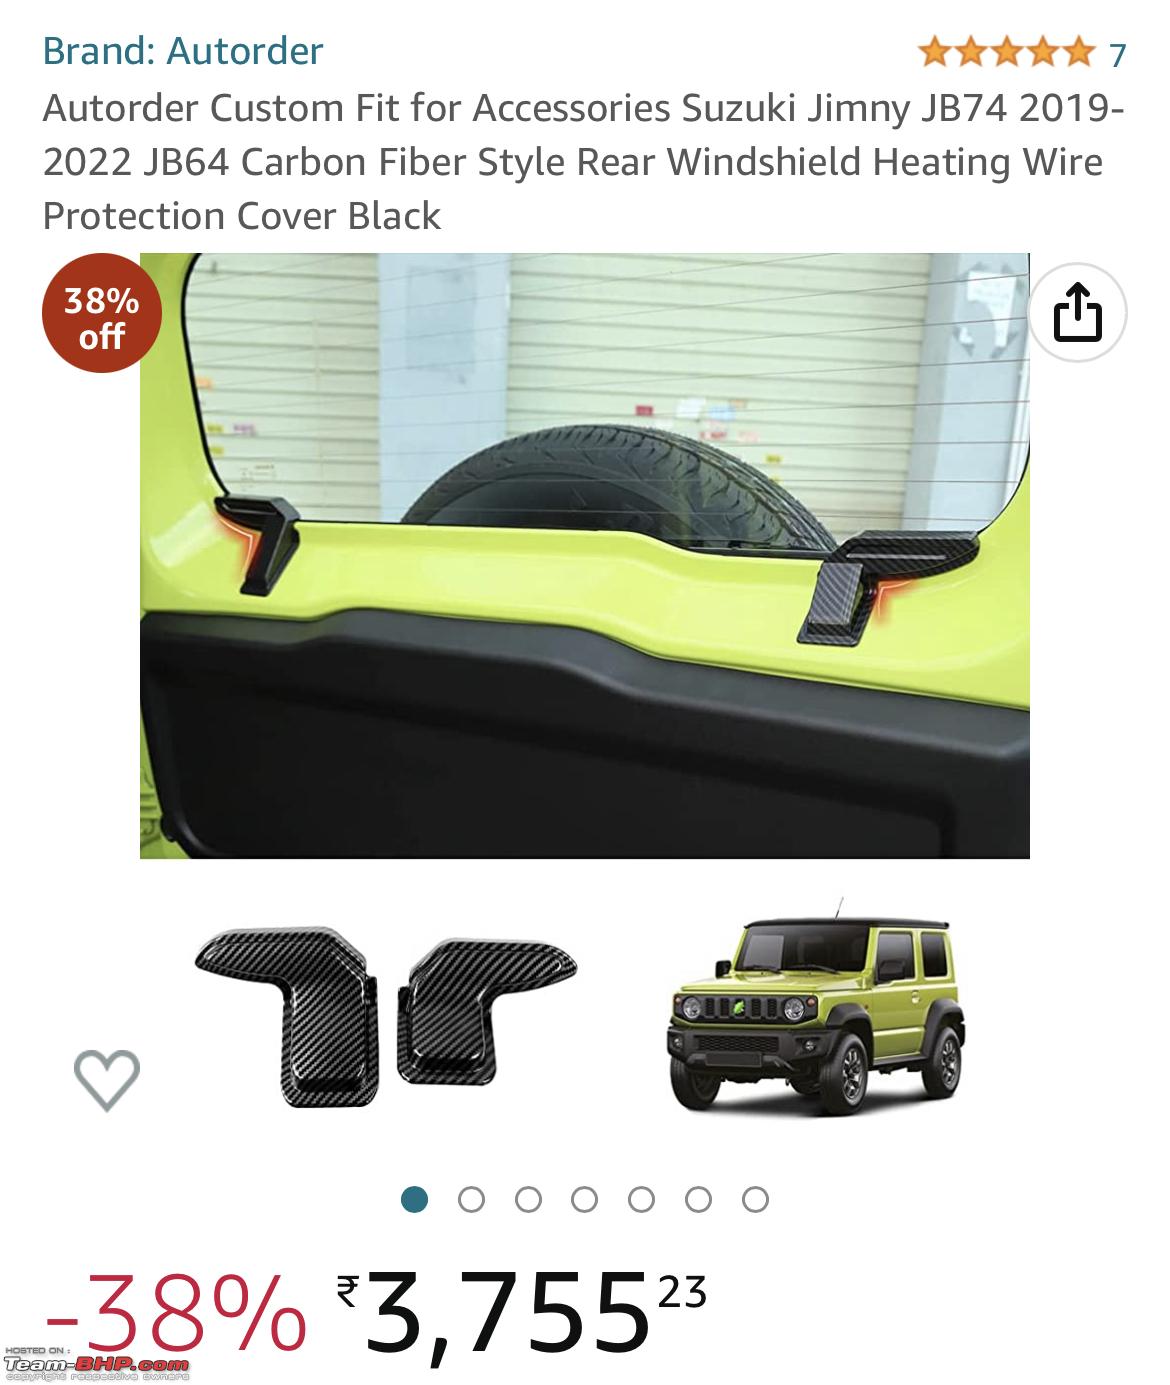  Autorder Custom Fit for Accessories Suzuki Jimny 2019